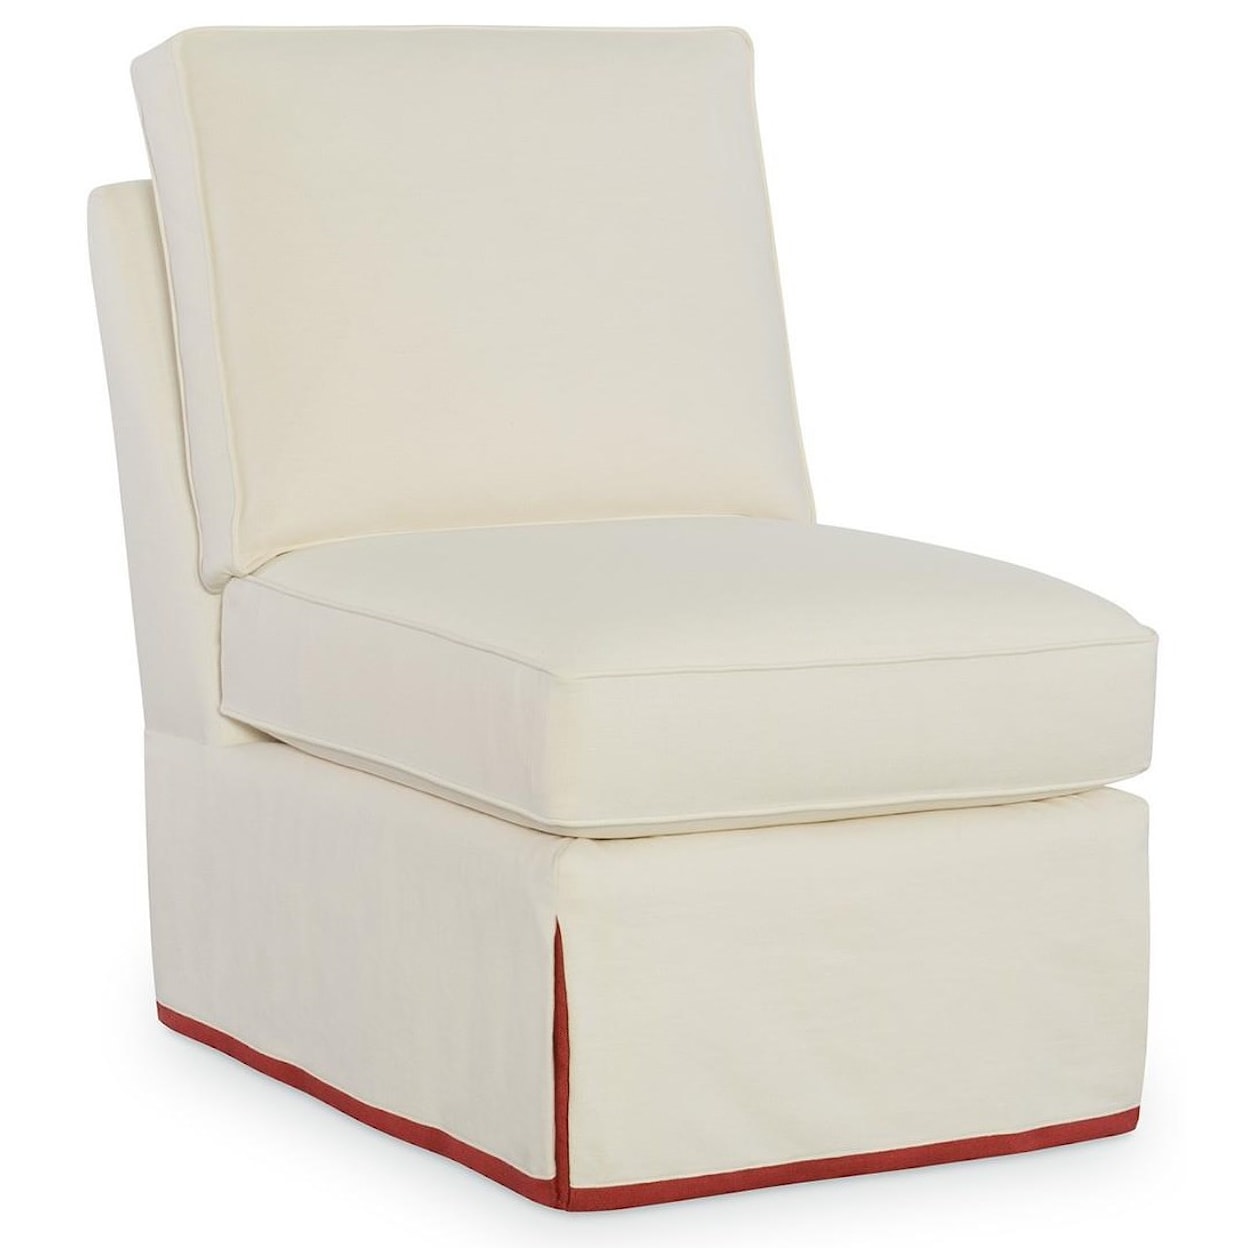 C.R. Laine Custom Design 8800 Series Armless Chair